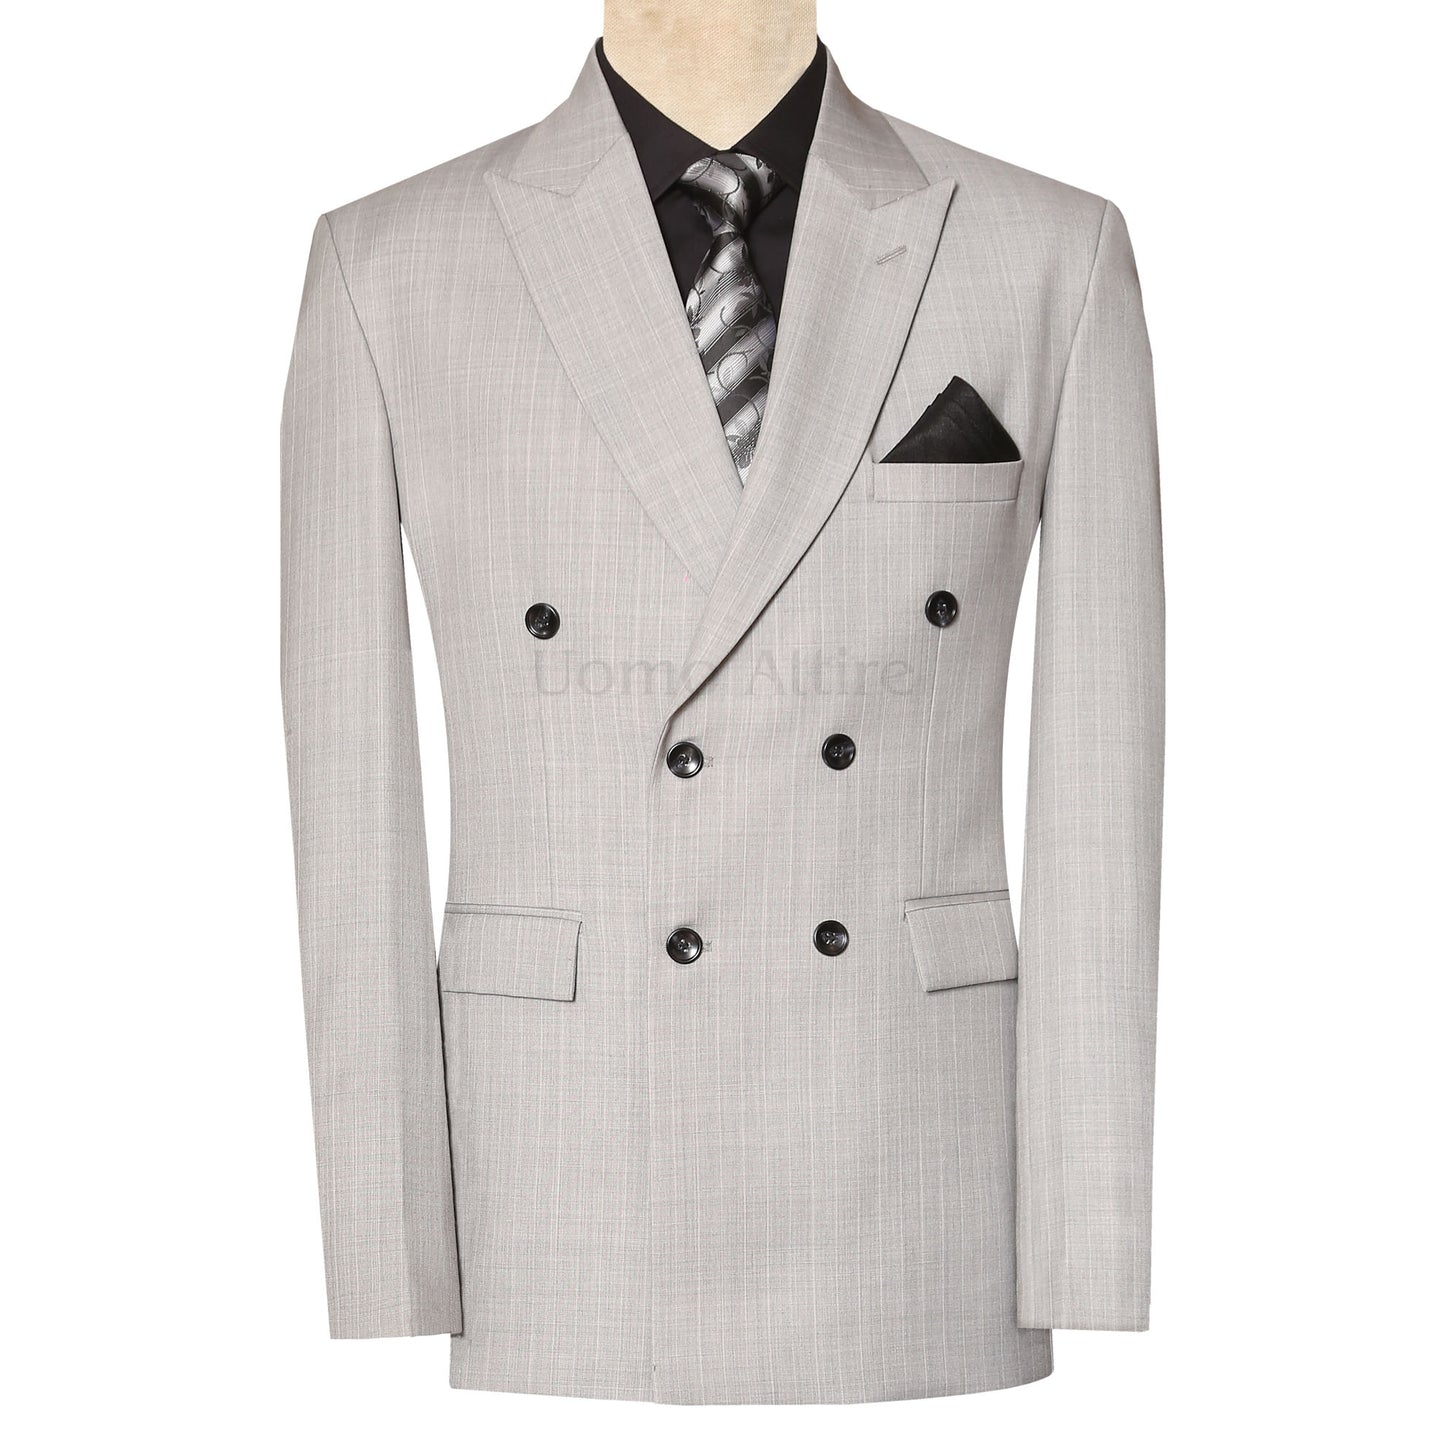 Best grey suits for men 2023: Reiss to Brunello Cucinelli | British GQ